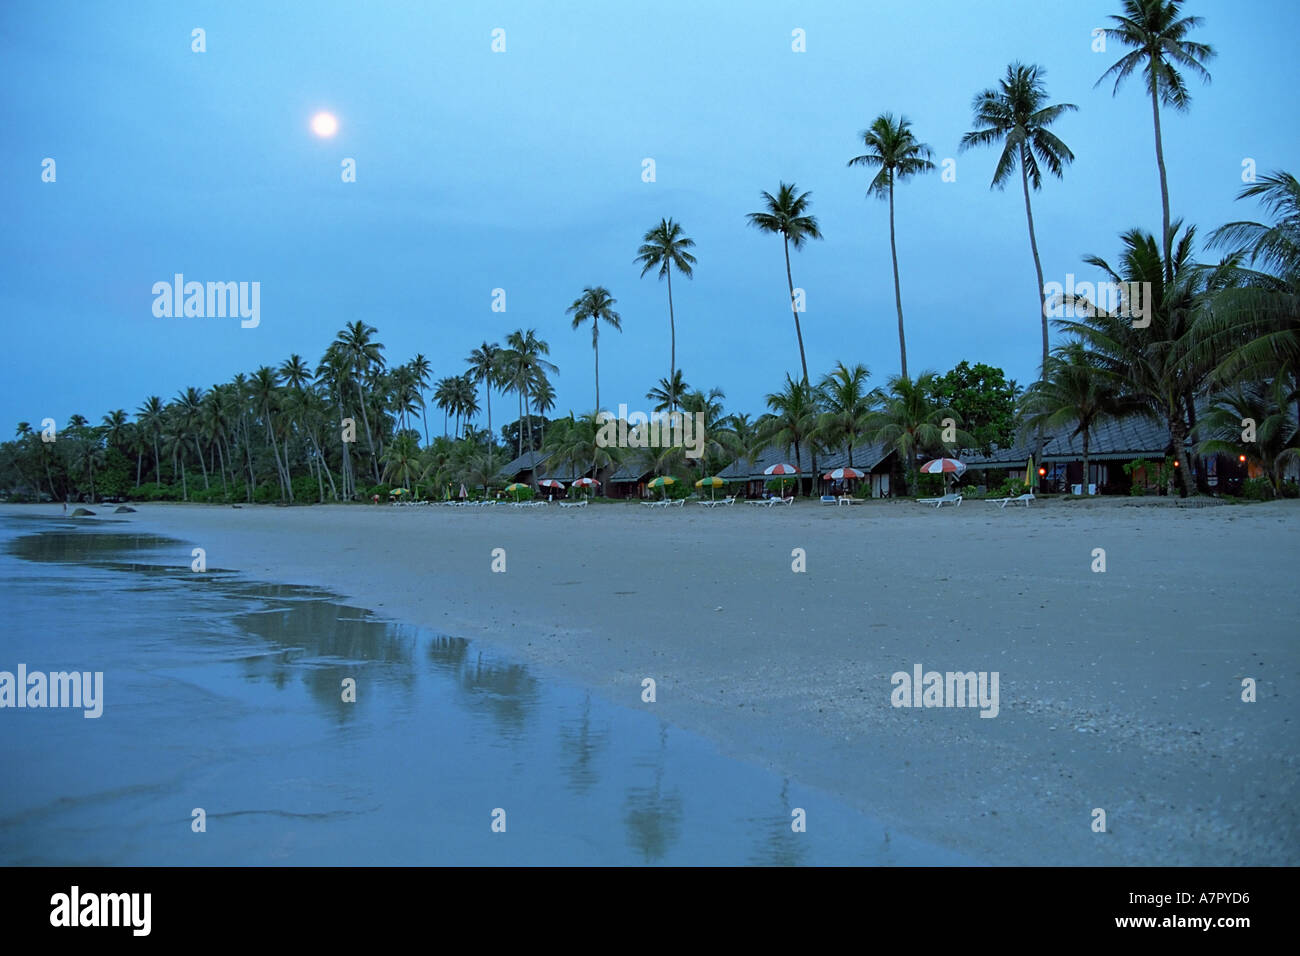 Full Moon rising über den Strand. Bintan Island, Indonesien. Stockfoto